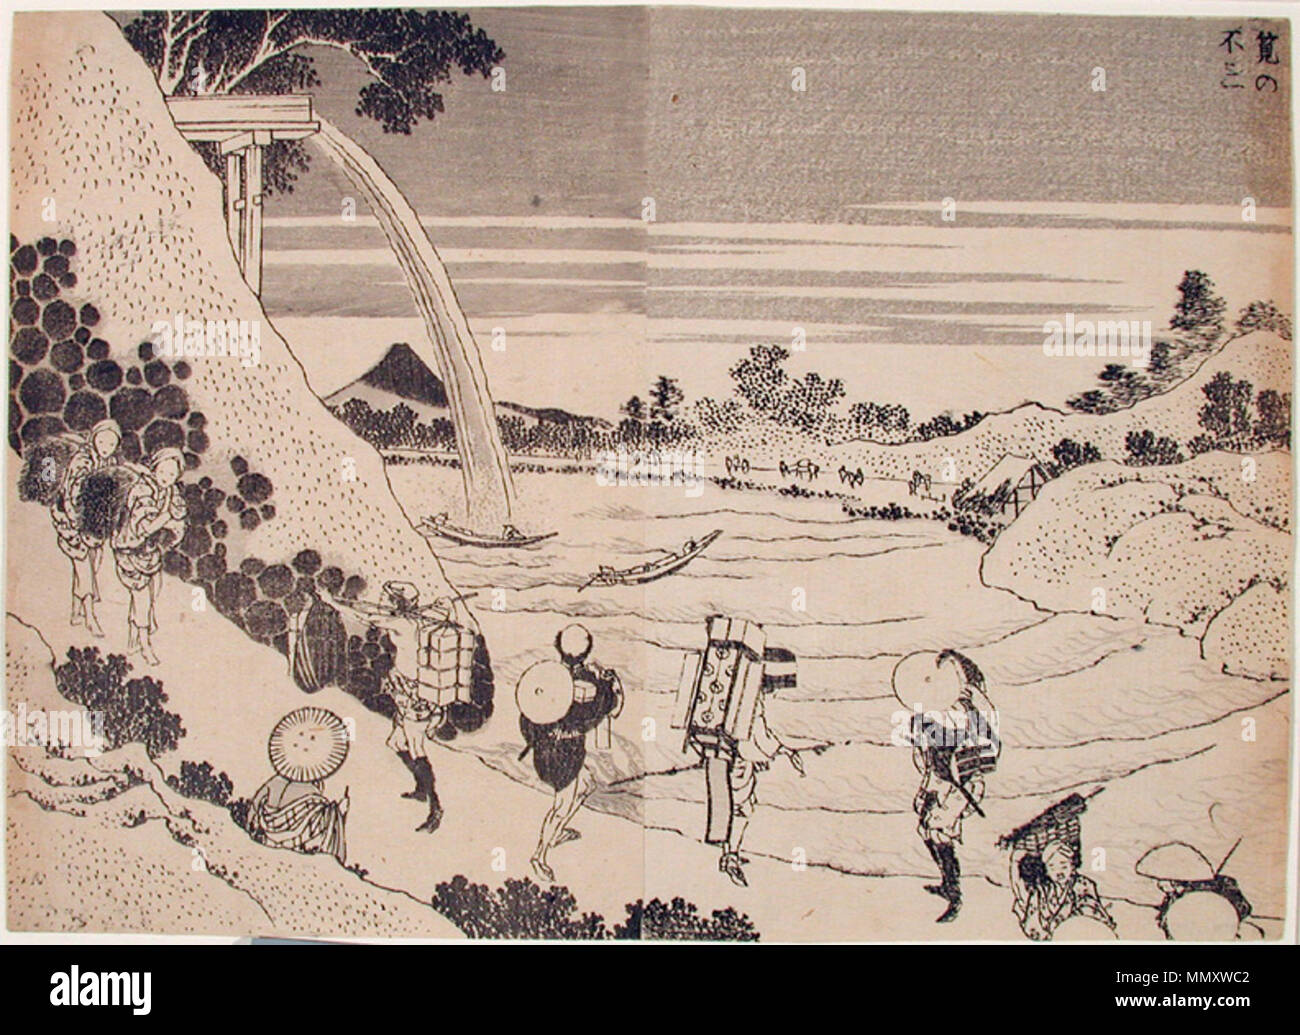 . Englisch: Beitritt Artikelnummer: 1965.94.16 Anzeige Künstler: Katsushika Hokusai Anzeige Titel: Fuji von der Conduit Serie Titel: Hundert Blick auf Mount Fuji Suite Name: Fugaku hyakkei Erstellungsdatum: 1834-1835 Höhe: 7 3/16 in. Breite: 9 cm. Anzeige Abmessungen: 7 3/16 in. x 9 7/8 in. (18,26 cm x 31,97 cm) Herausgeber: Nishimuraya Yuzo Kreditlinie: Geschenk von Frau Harold Rhody Witherbee Label kopieren: 'Cada nombrada cortesana est en los Grabados. A la Izquierda, sosteniendo un Libro, est Hanado. Luego, Tamino se ajusta una Horquilla, y en el centro Hanazome muele Tinta y lleva un pincel de caligraf Stockfoto